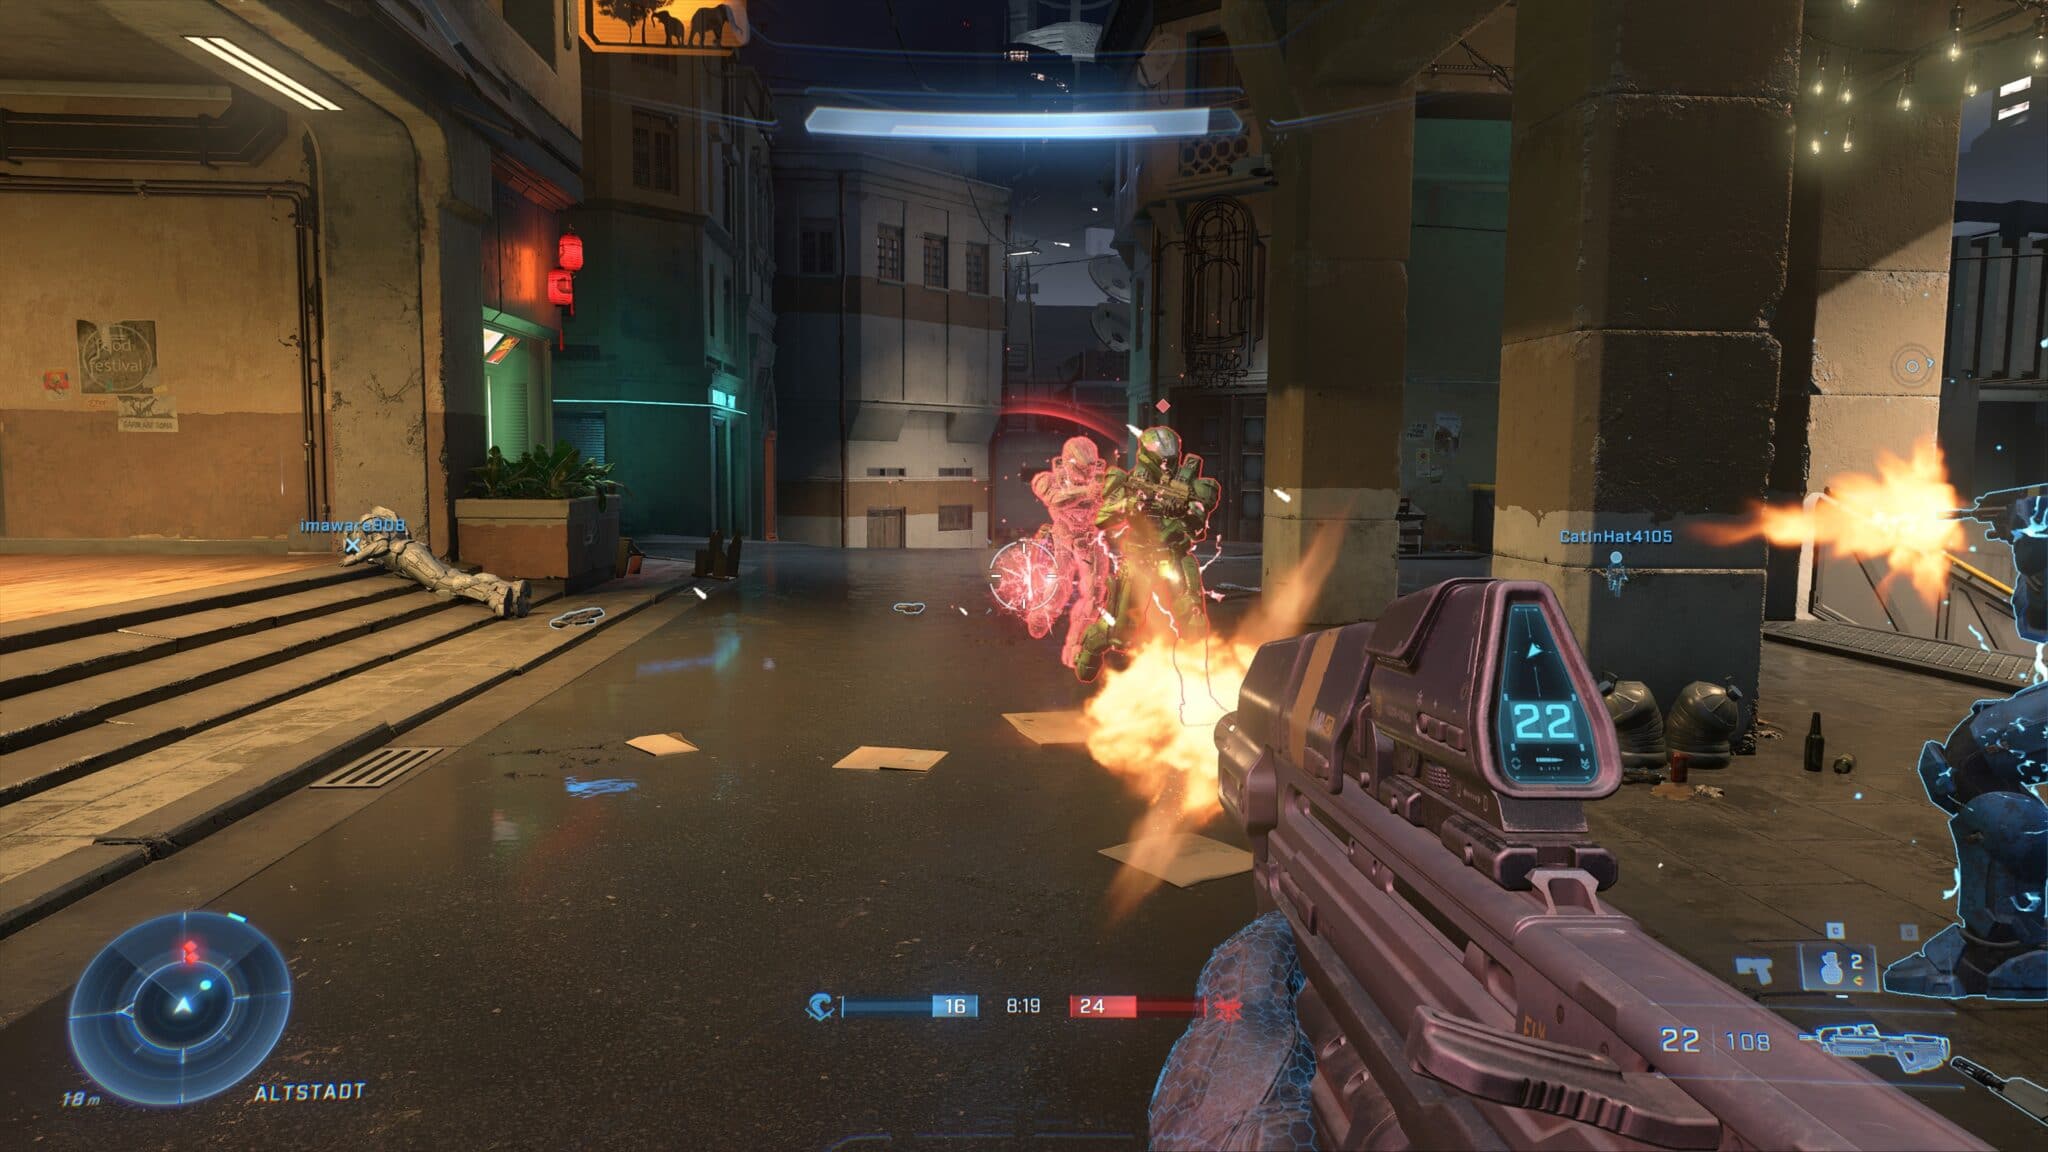 Il gameplay dello sparatutto è attualmente il punto forte di Halo Infinite. Il pacchetto complessivo, tuttavia, è ancora scarso.